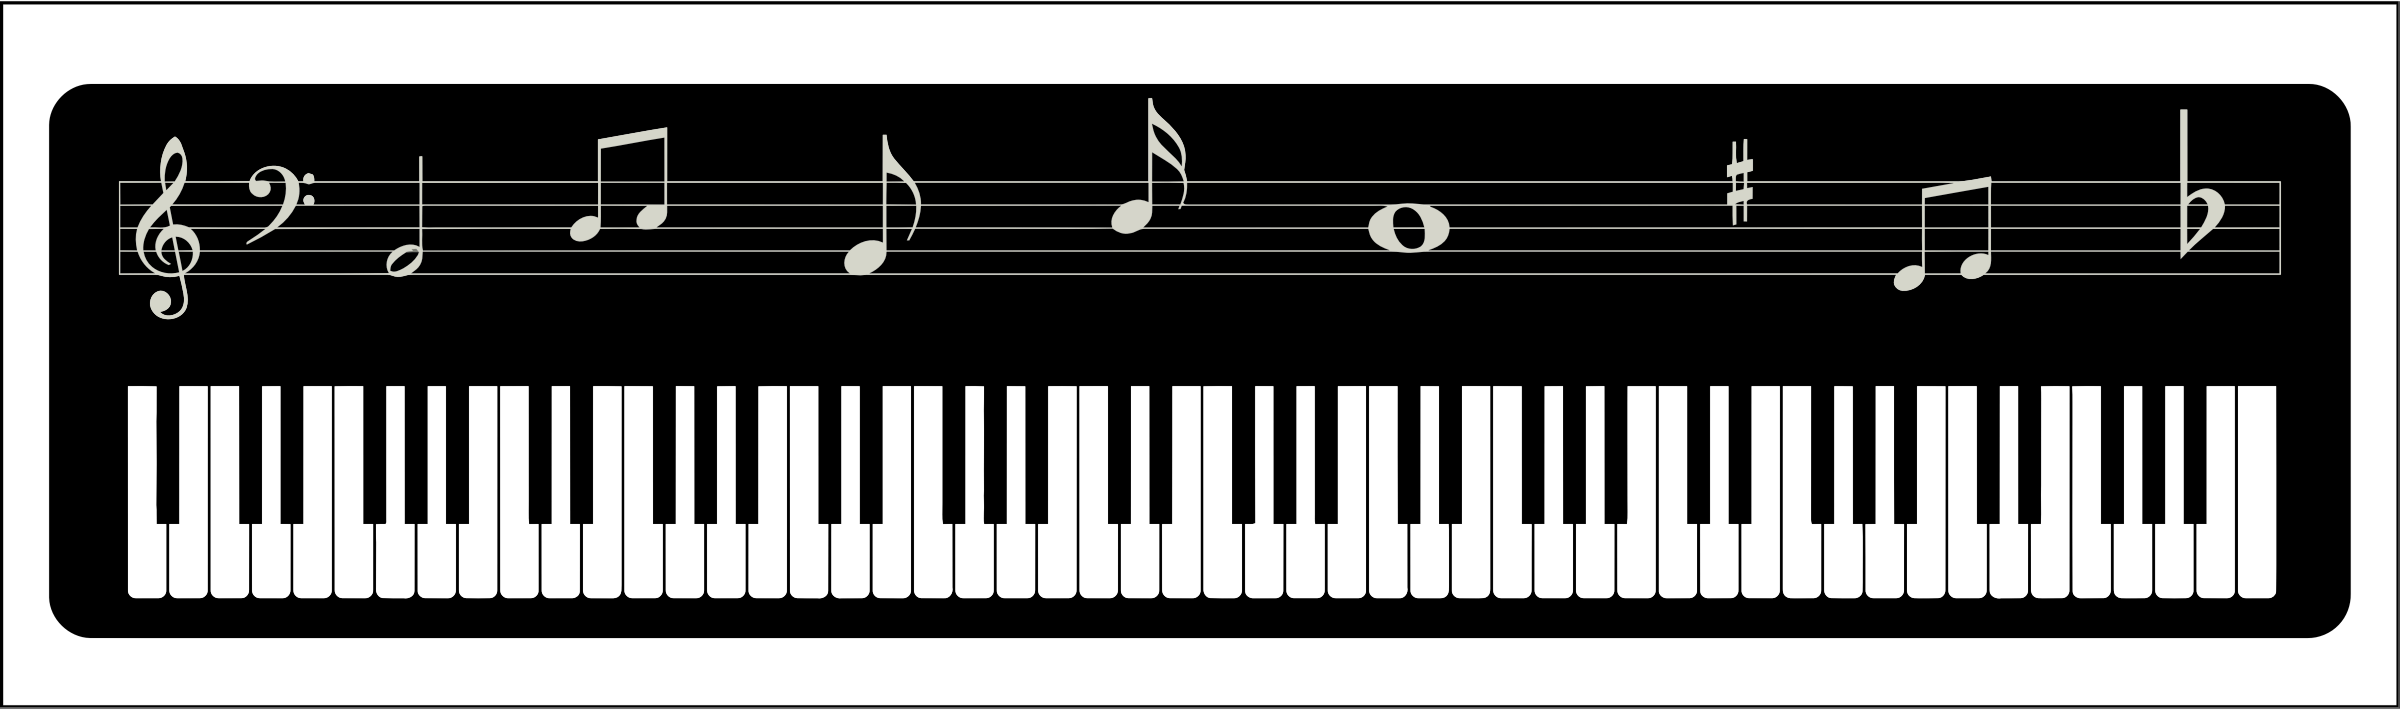 لوحة مفاتيح الموسيقى الرقمية PNG